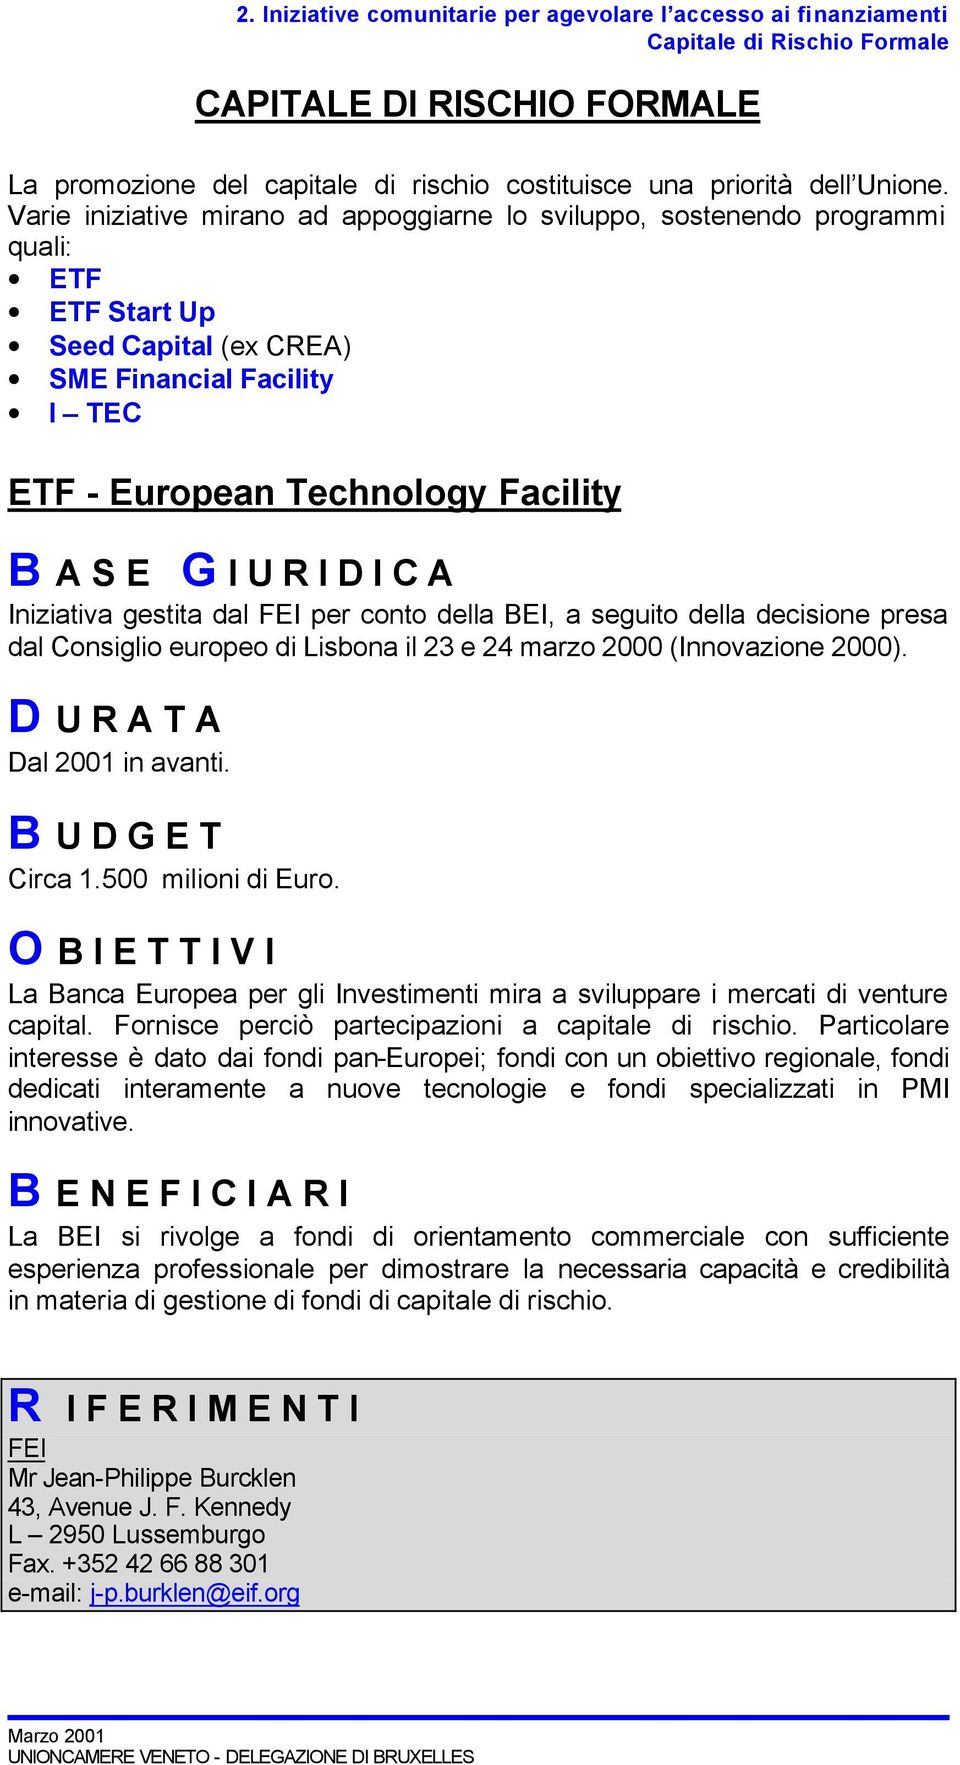 gestita dal FEI per conto della BEI, a seguito della decisione presa dal Consiglio europeo di Lisbona il 23 e 24 marzo 2000 (Innovazione 2000). D U R A T A Dal 2001 in avanti. Circa 1.